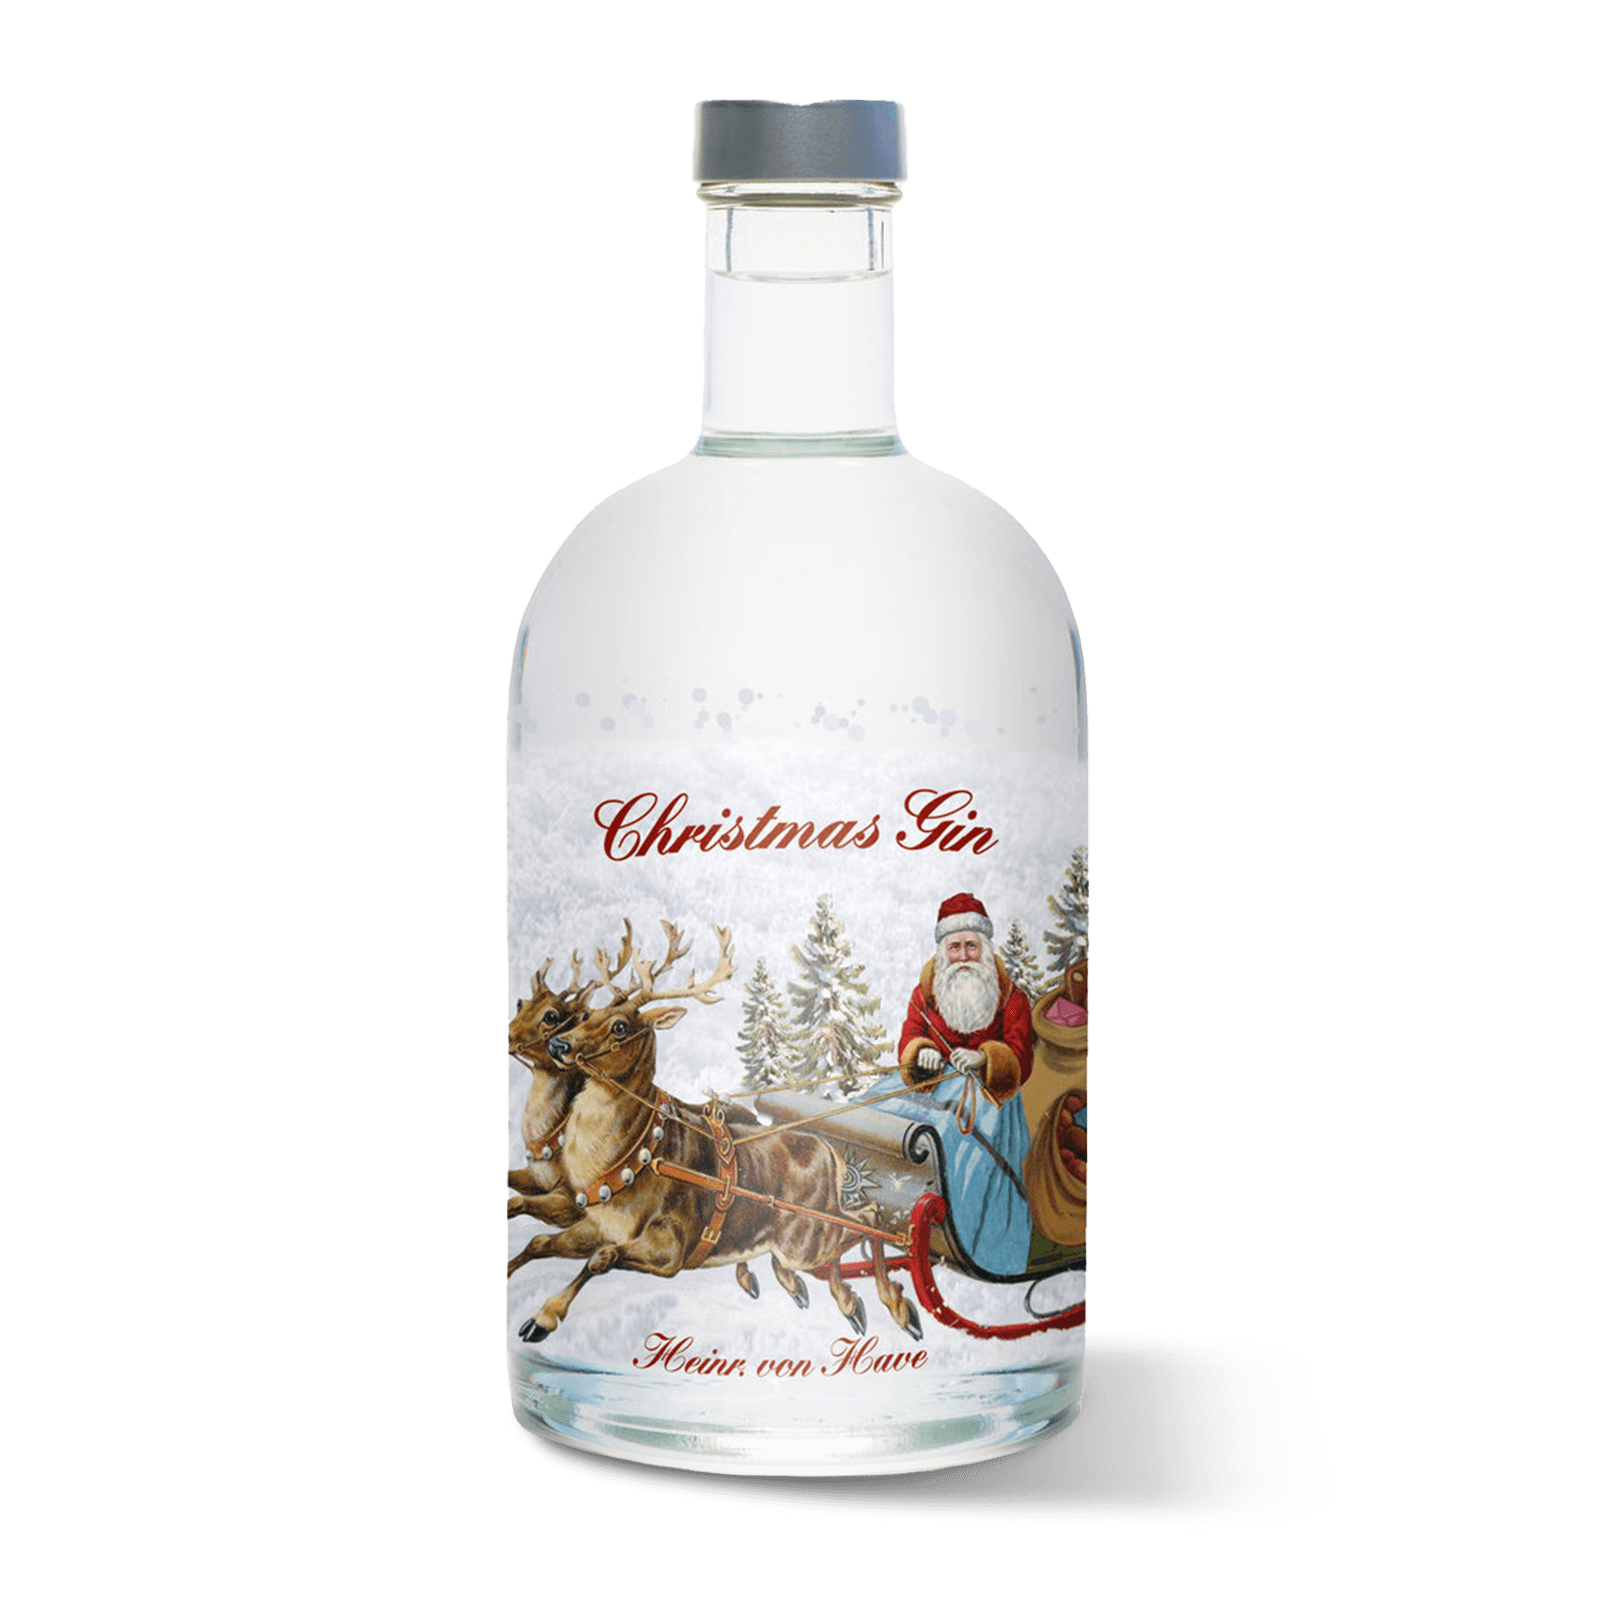 Produktabbildung Heinr. von Have Christmas Gin